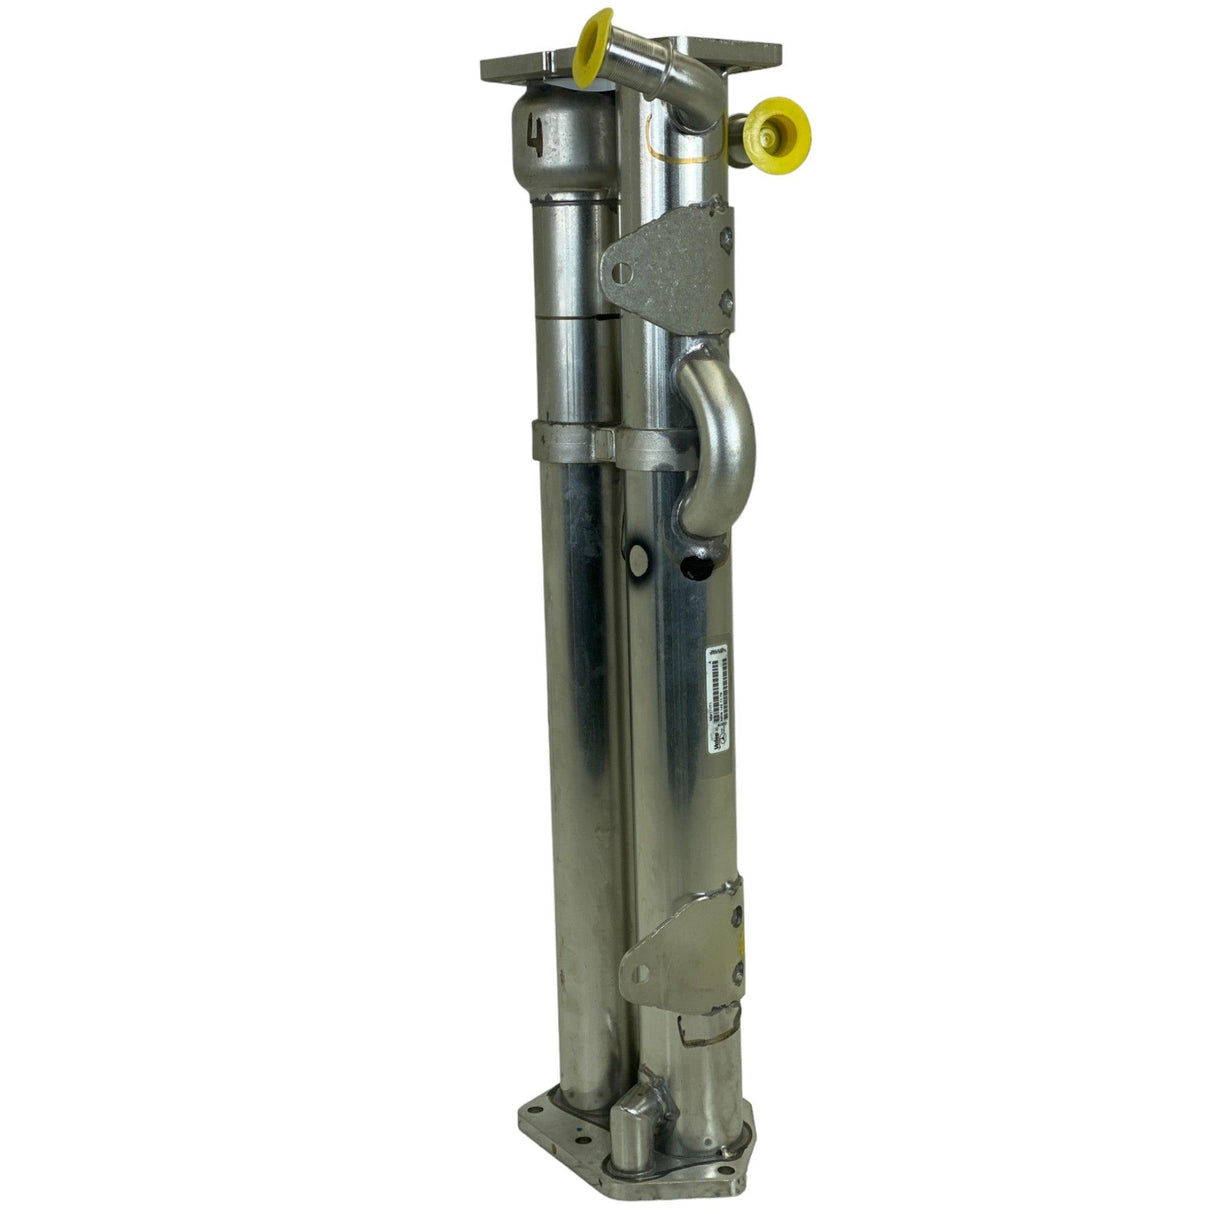 R9061421179 Genuine Detroit Diesel EGR Exhaust Gas Recirculation Cooler